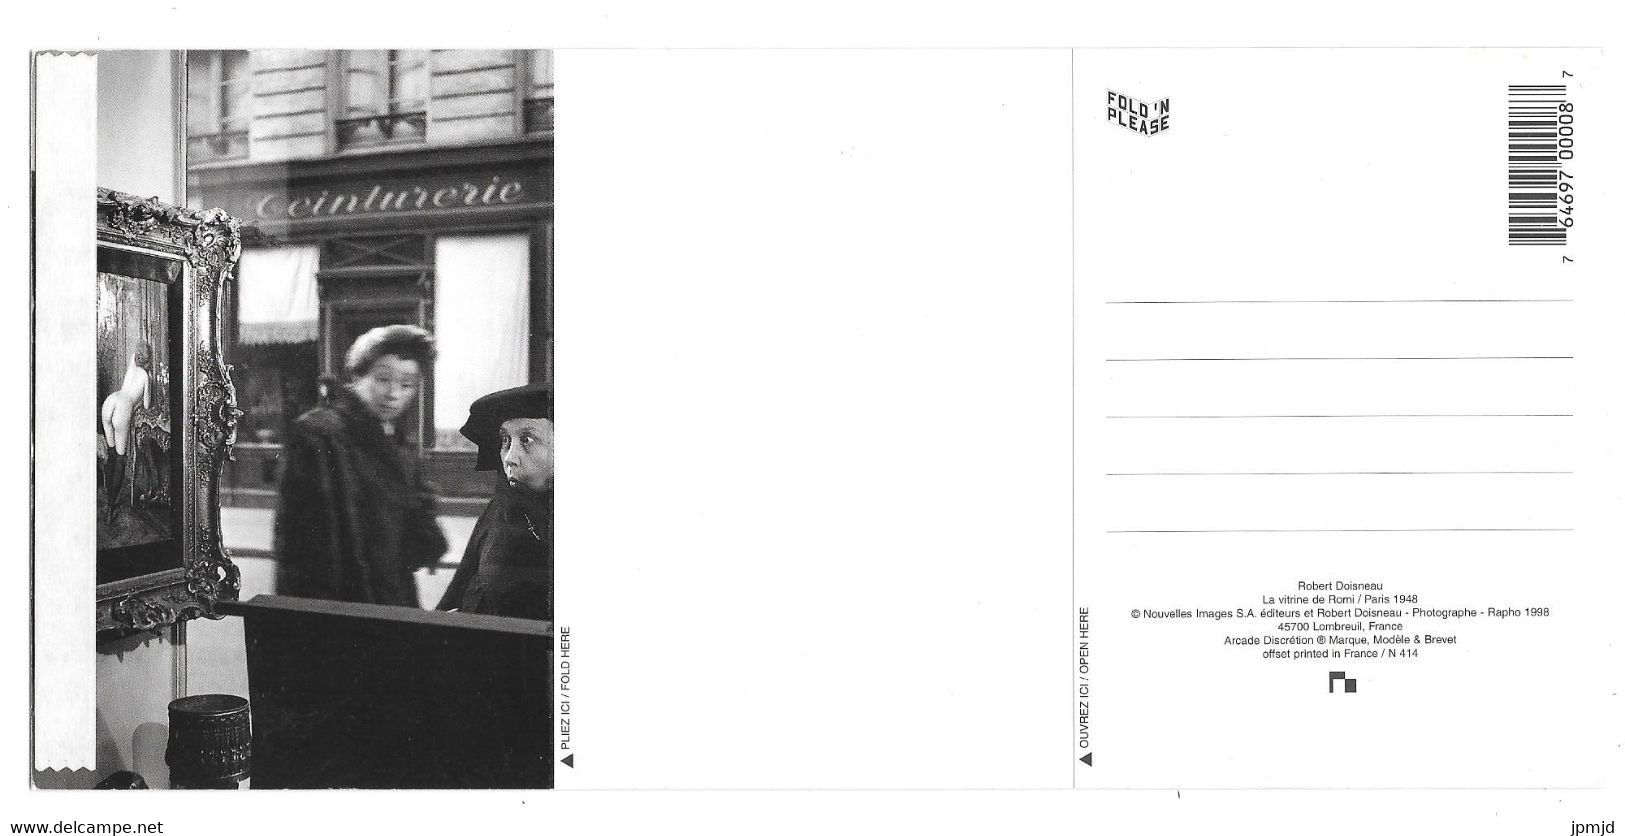 Robert Doisneau - La Vitrine De Romi - Nouvelles Images N 414 FOLD'N PLEASE - Format 11.5 X 24.5 Cm - Doisneau